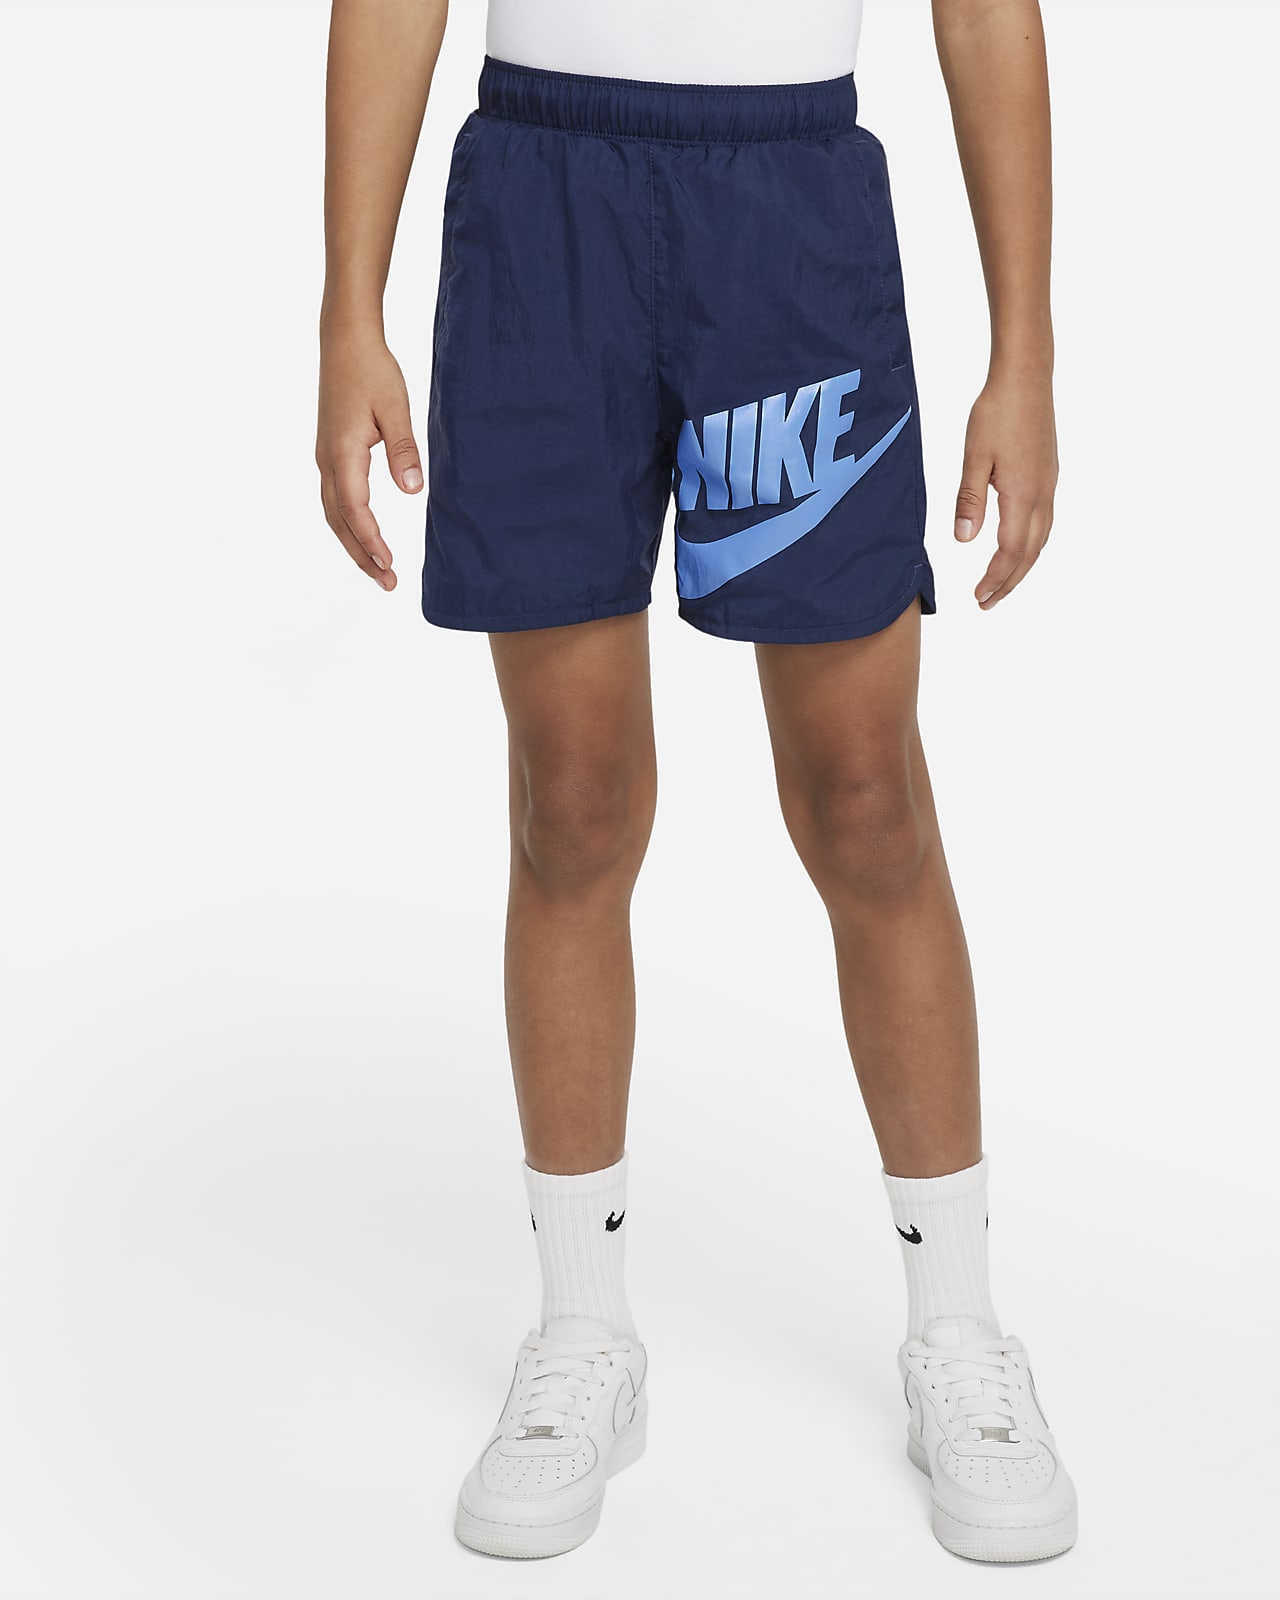 Nike Sportswear Older Kids' (Boys') Woven Shorts